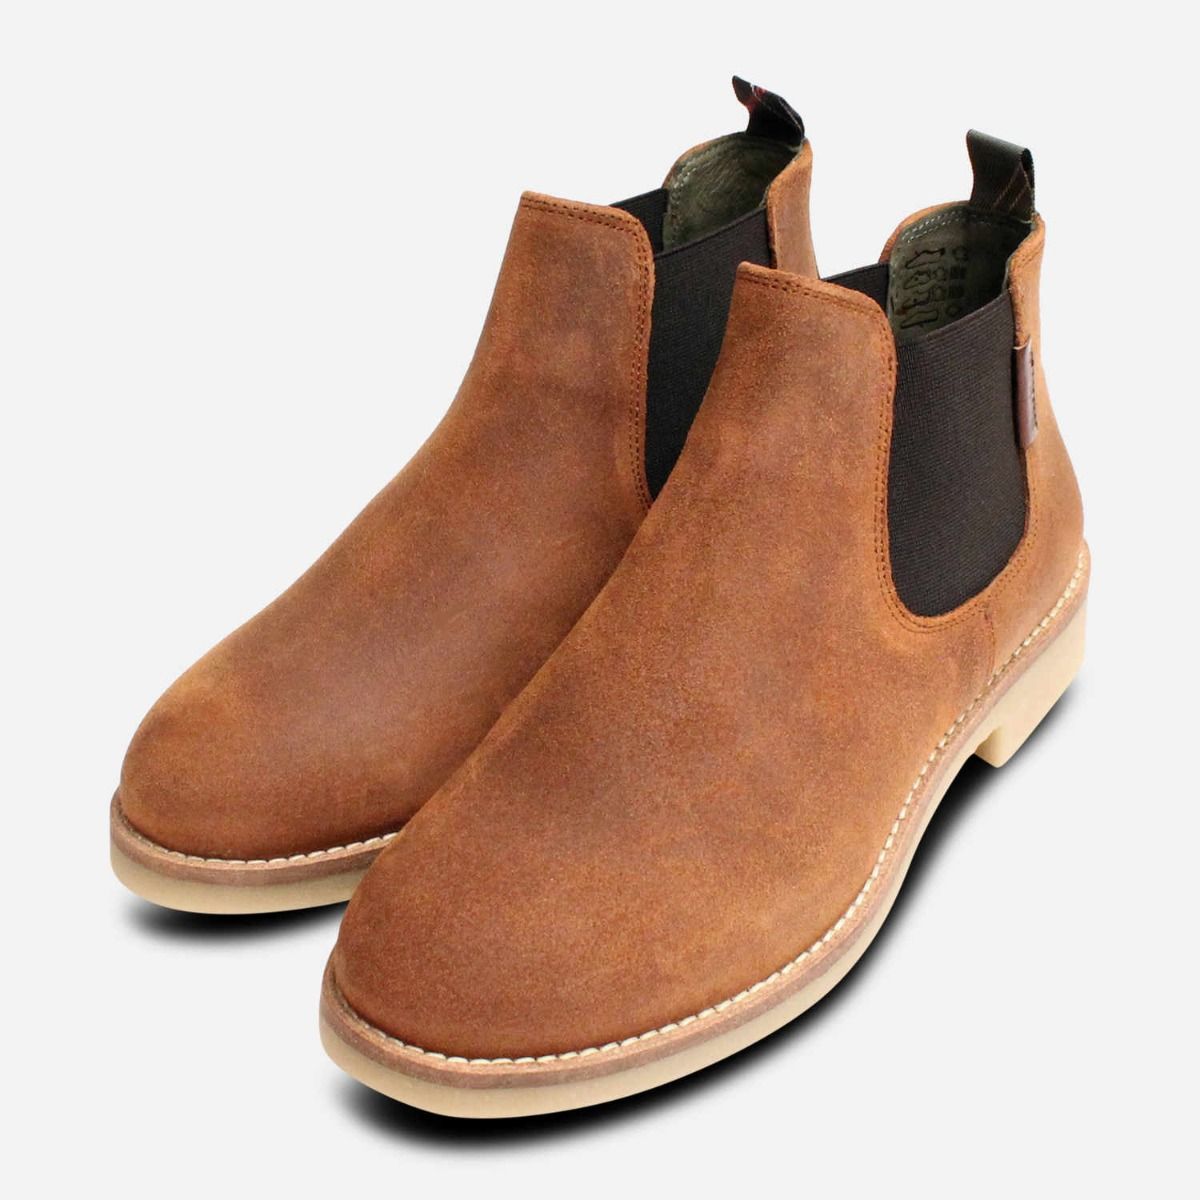 barbour dalton boots